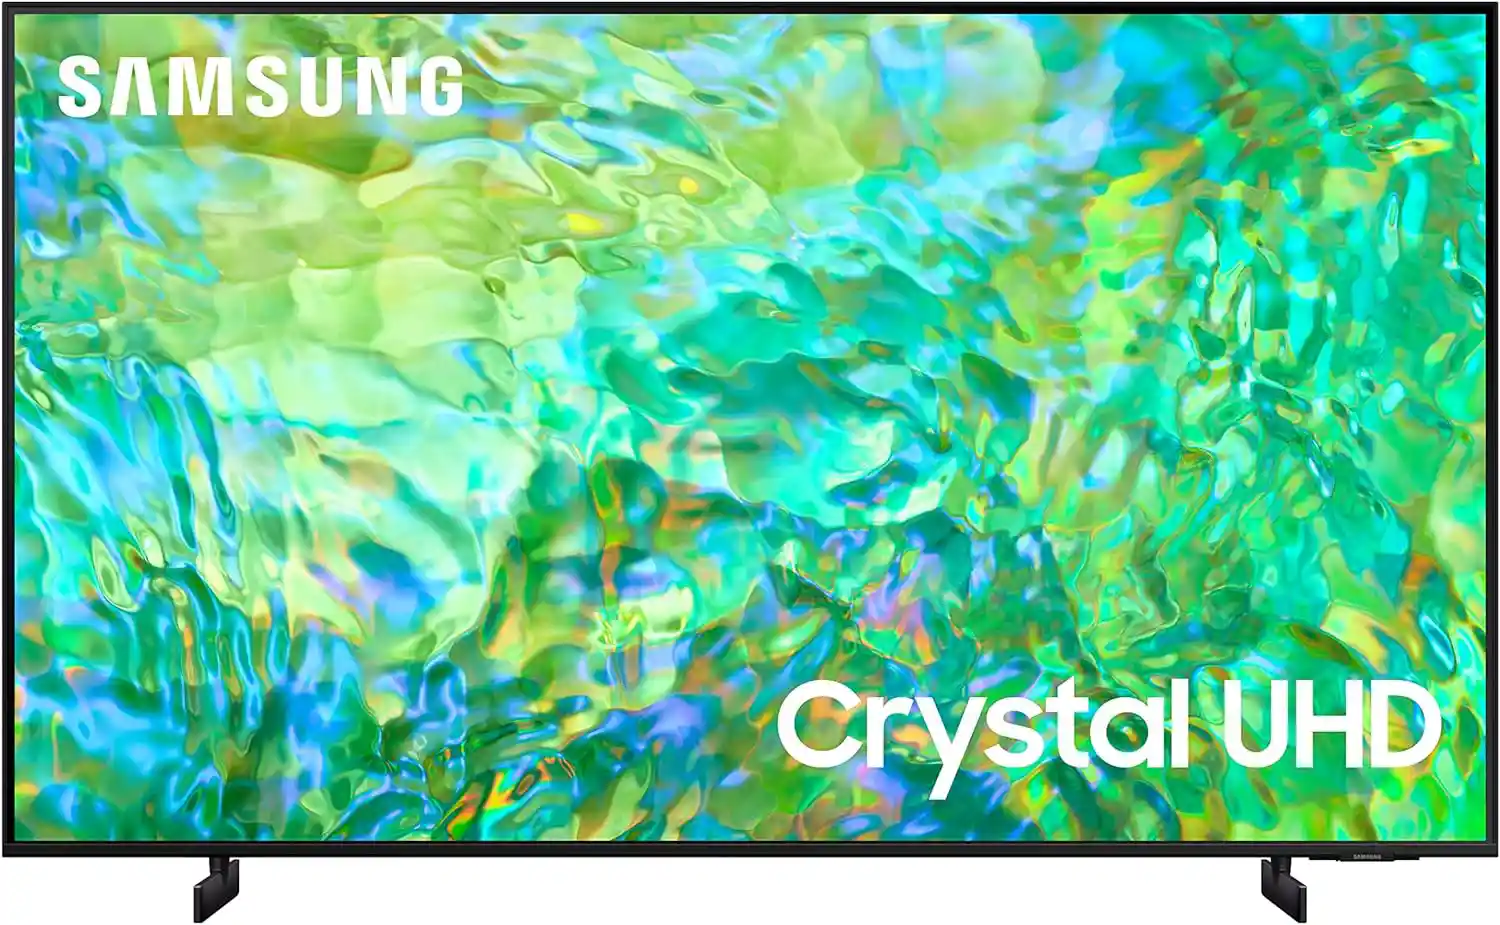 Meilleur TV 50 pouces rapport qualité/prix : Samsung 50 pouces Classe Crystal UHD Série CU8000